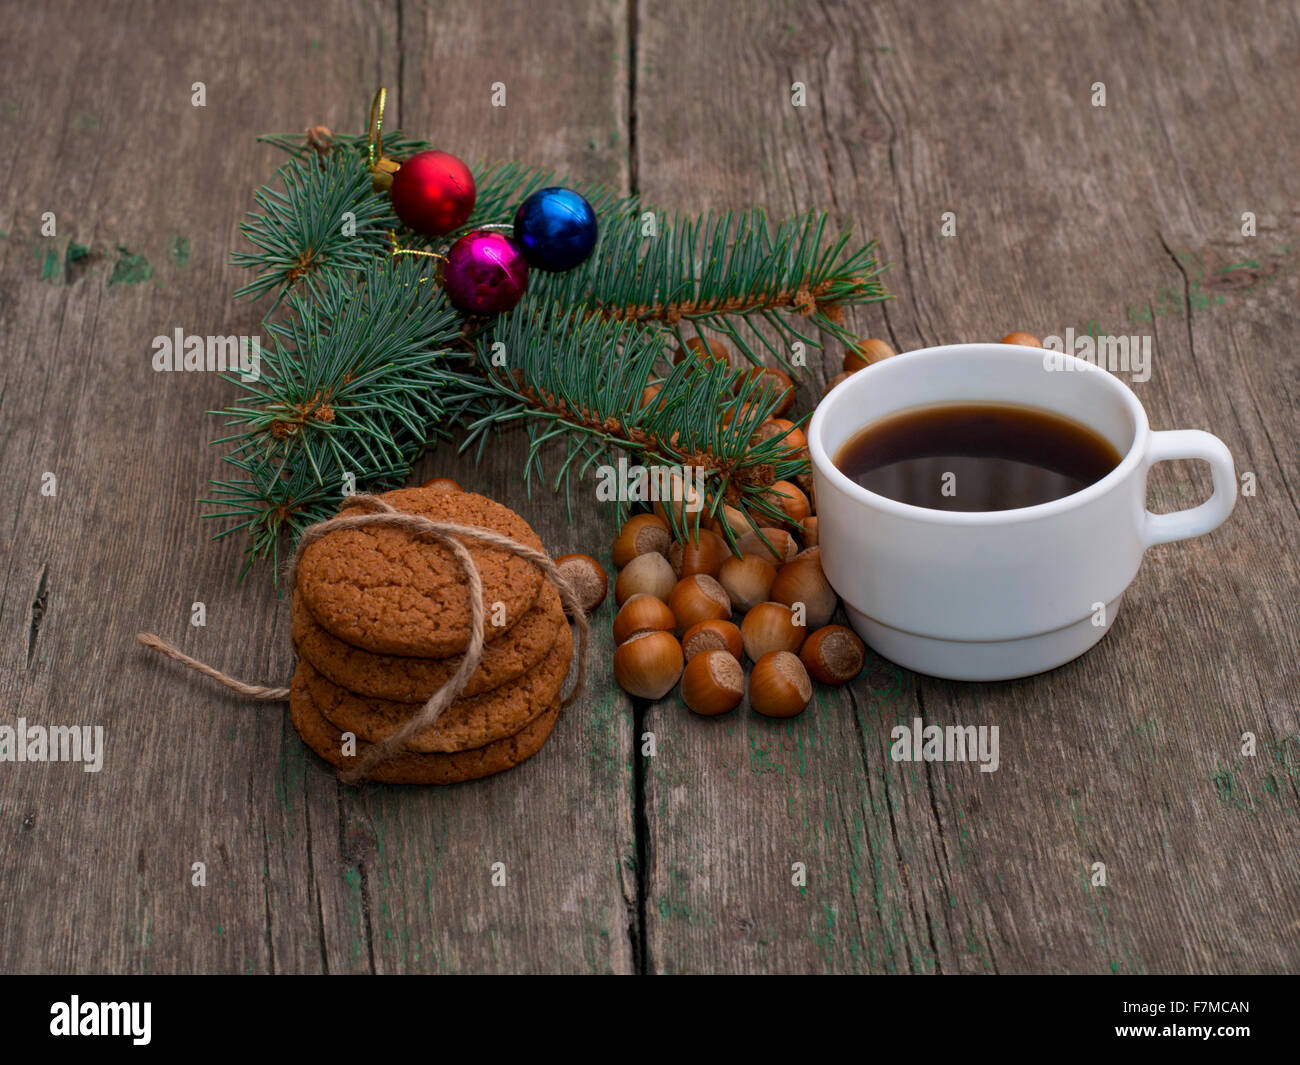 Le café, fir-tree branch, reliant des biscuits et forêt nucule Banque D'Images